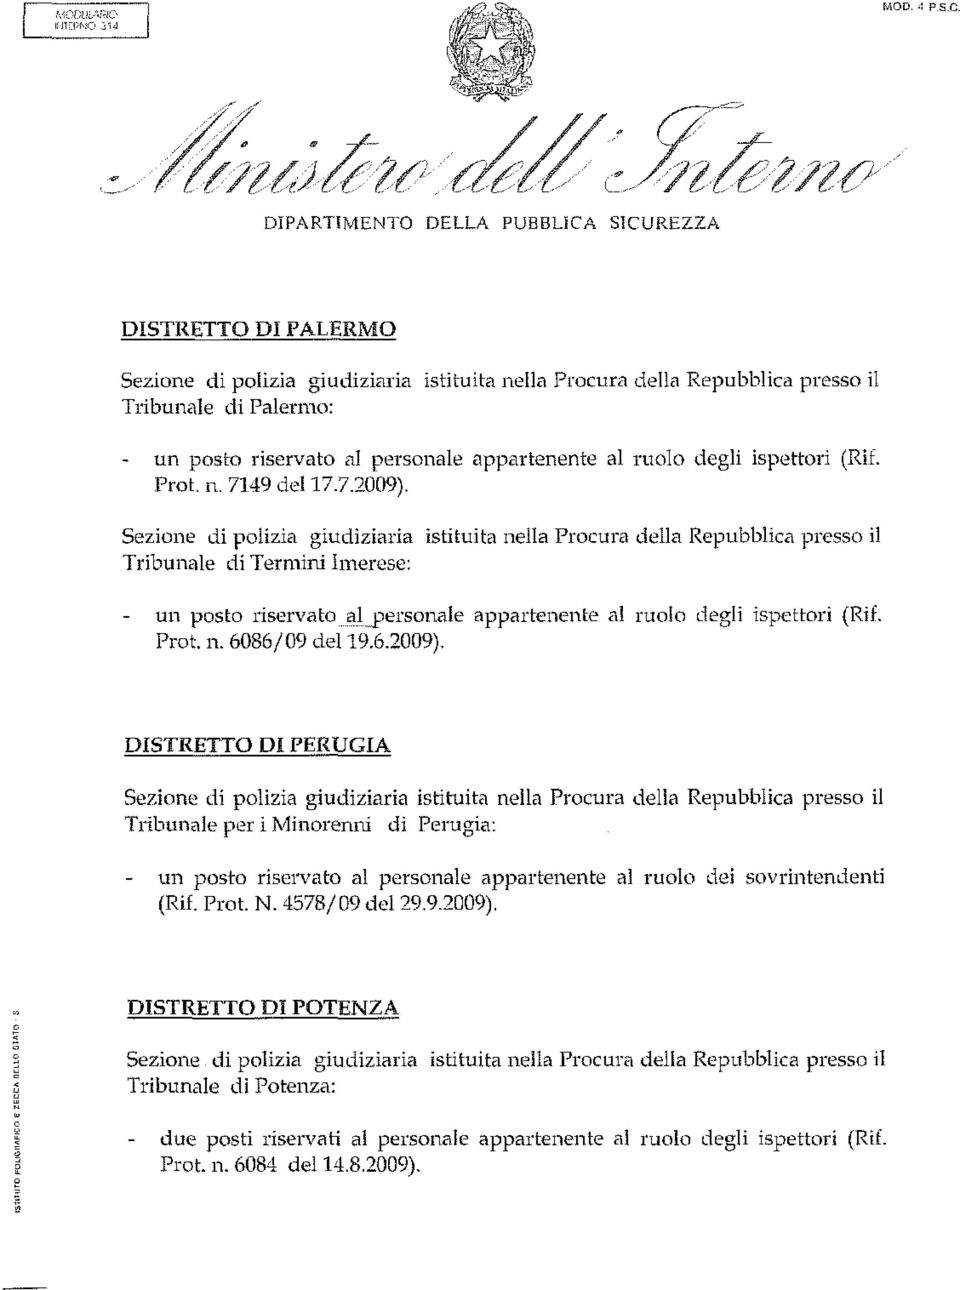 Tribunale per i Minorenni di Perugia: - un posto riservato al personale appartenente al ruolo dei sovrintendenti (Rif. Prot. N.